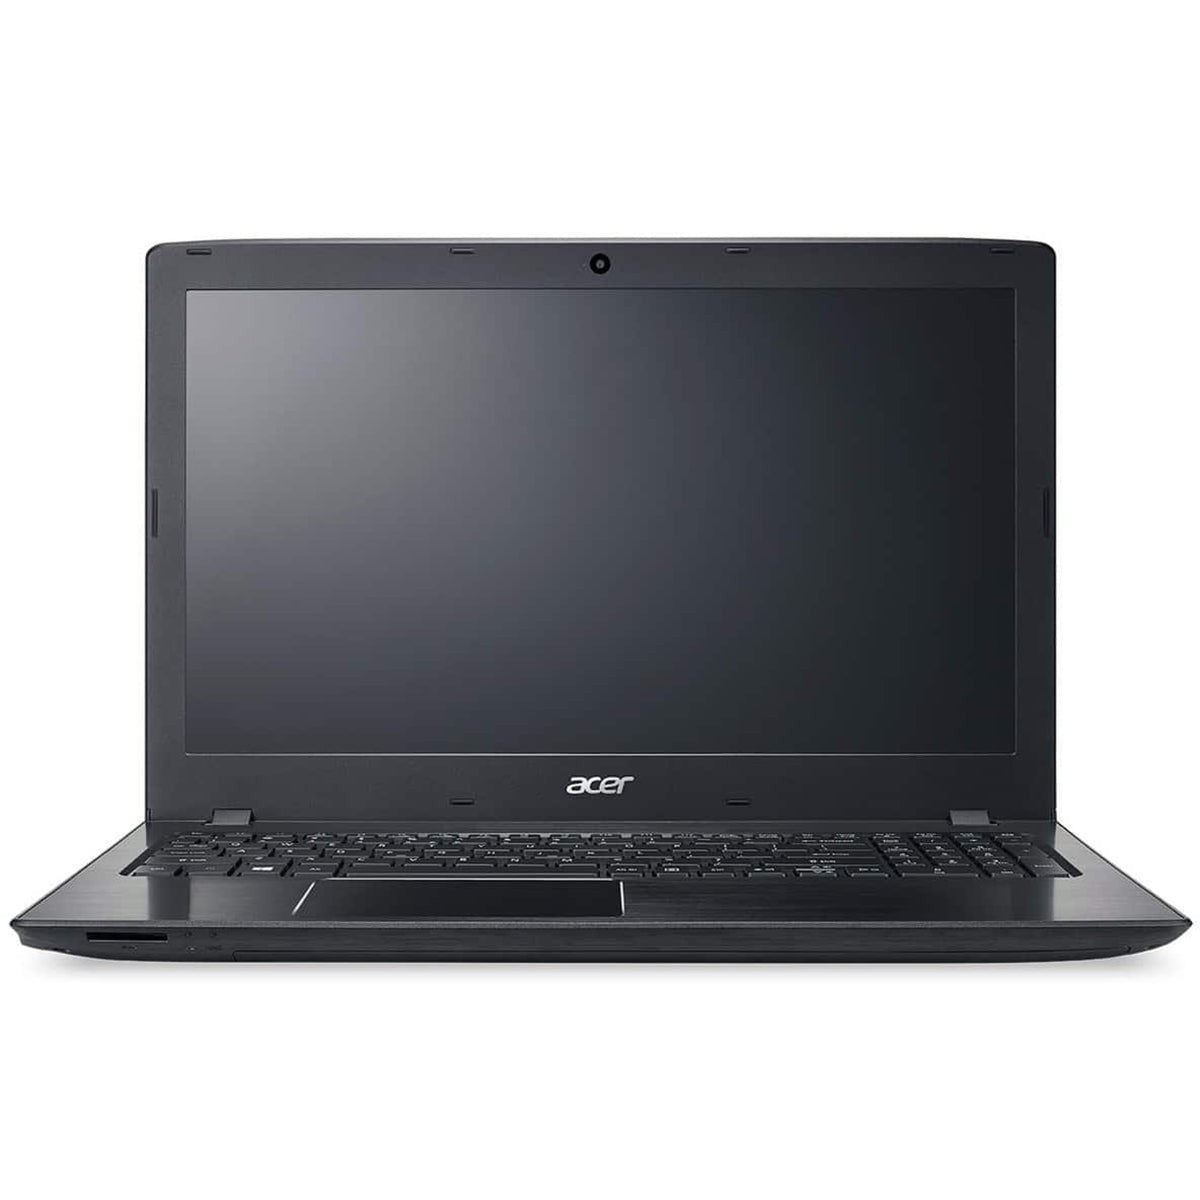 Acer Aspire E5-523 AMD A9-9410 4GB RAM 1TB HDD 15.6" - Black